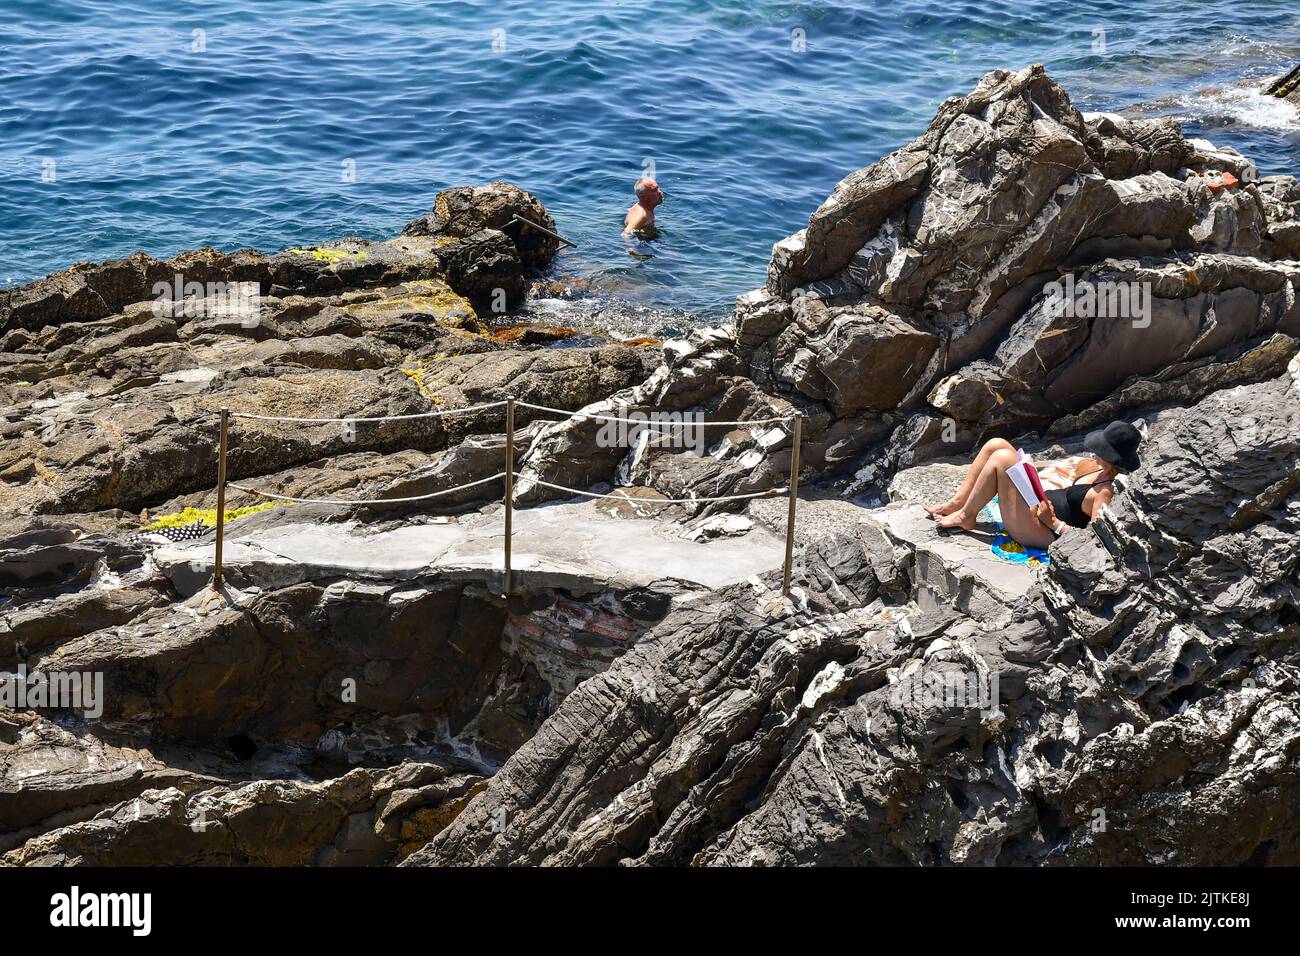 A woman reading on the cliff and a man swimming on the seashore of the Anita Garibaldi Promenade, popular tourist destination in Genoa, Nervi, Liguria Stock Photo